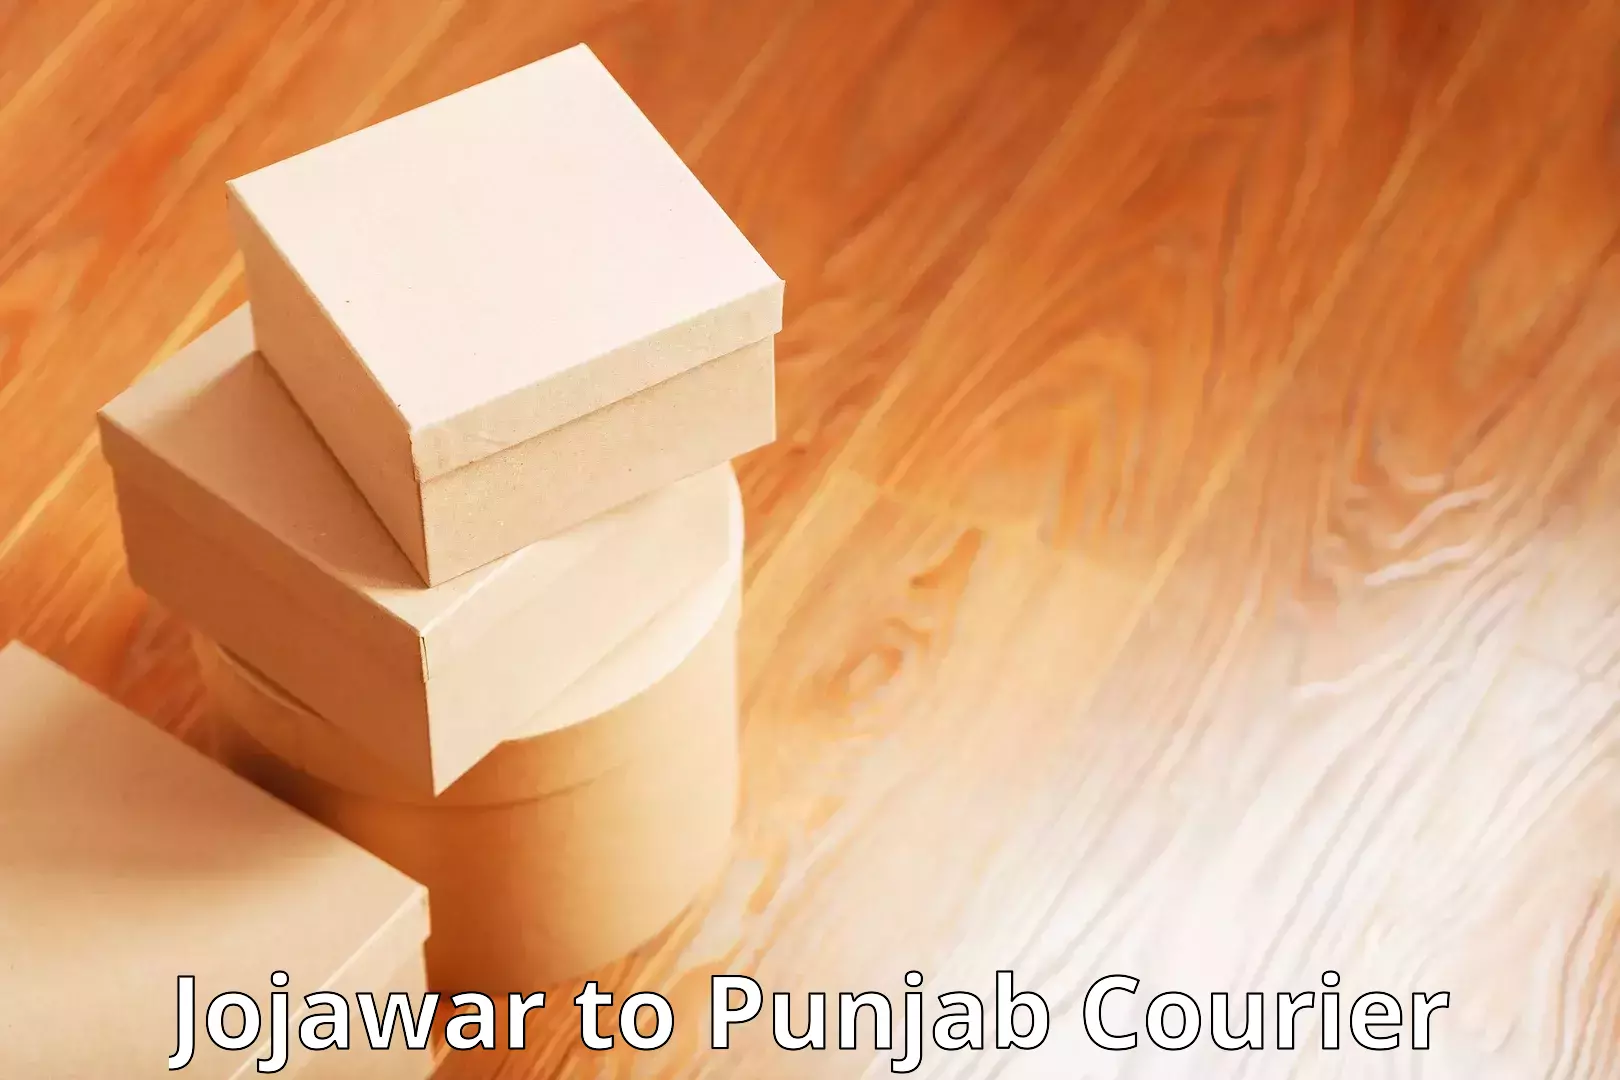 International shipping Jojawar to Punjab